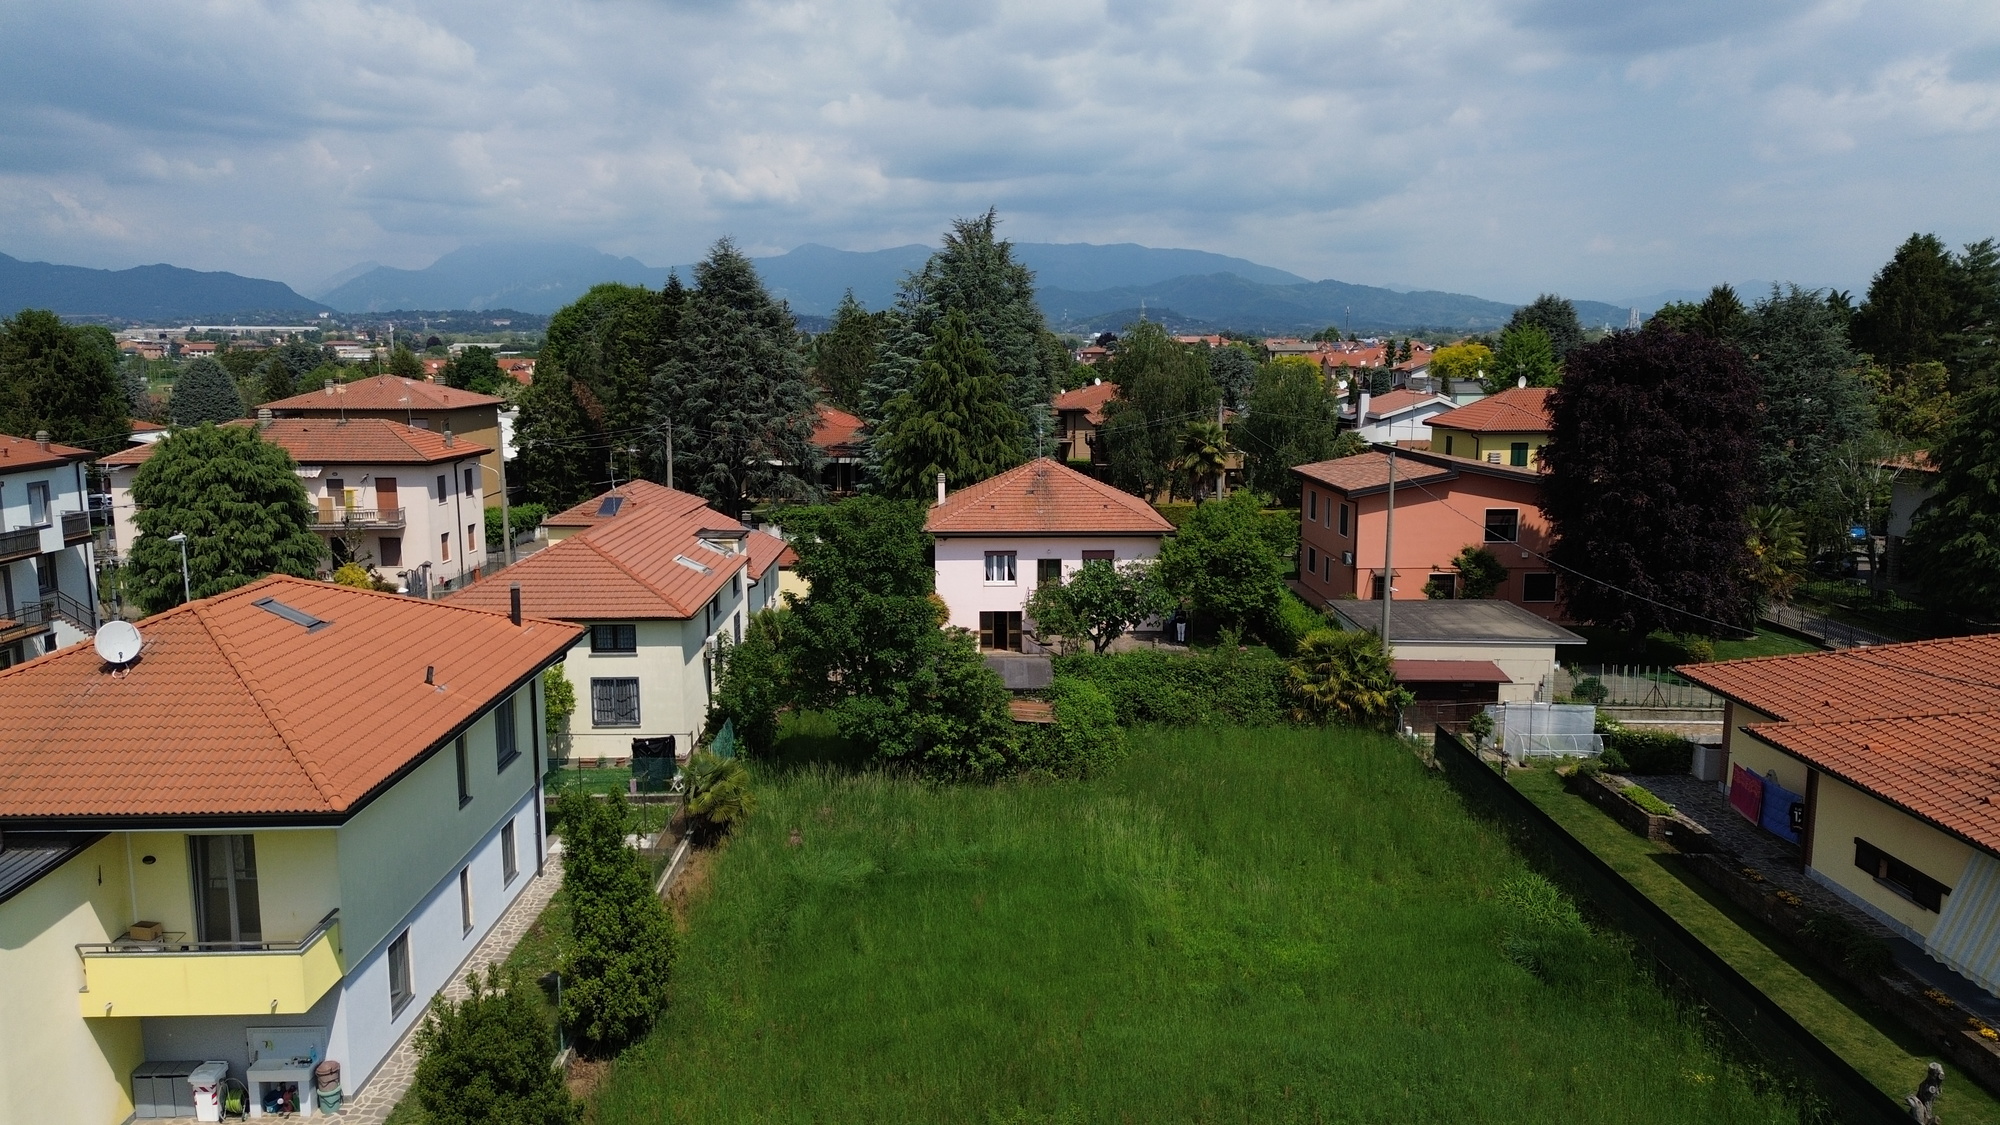 For sale villa in quiet zone Bernareggio Lombardia